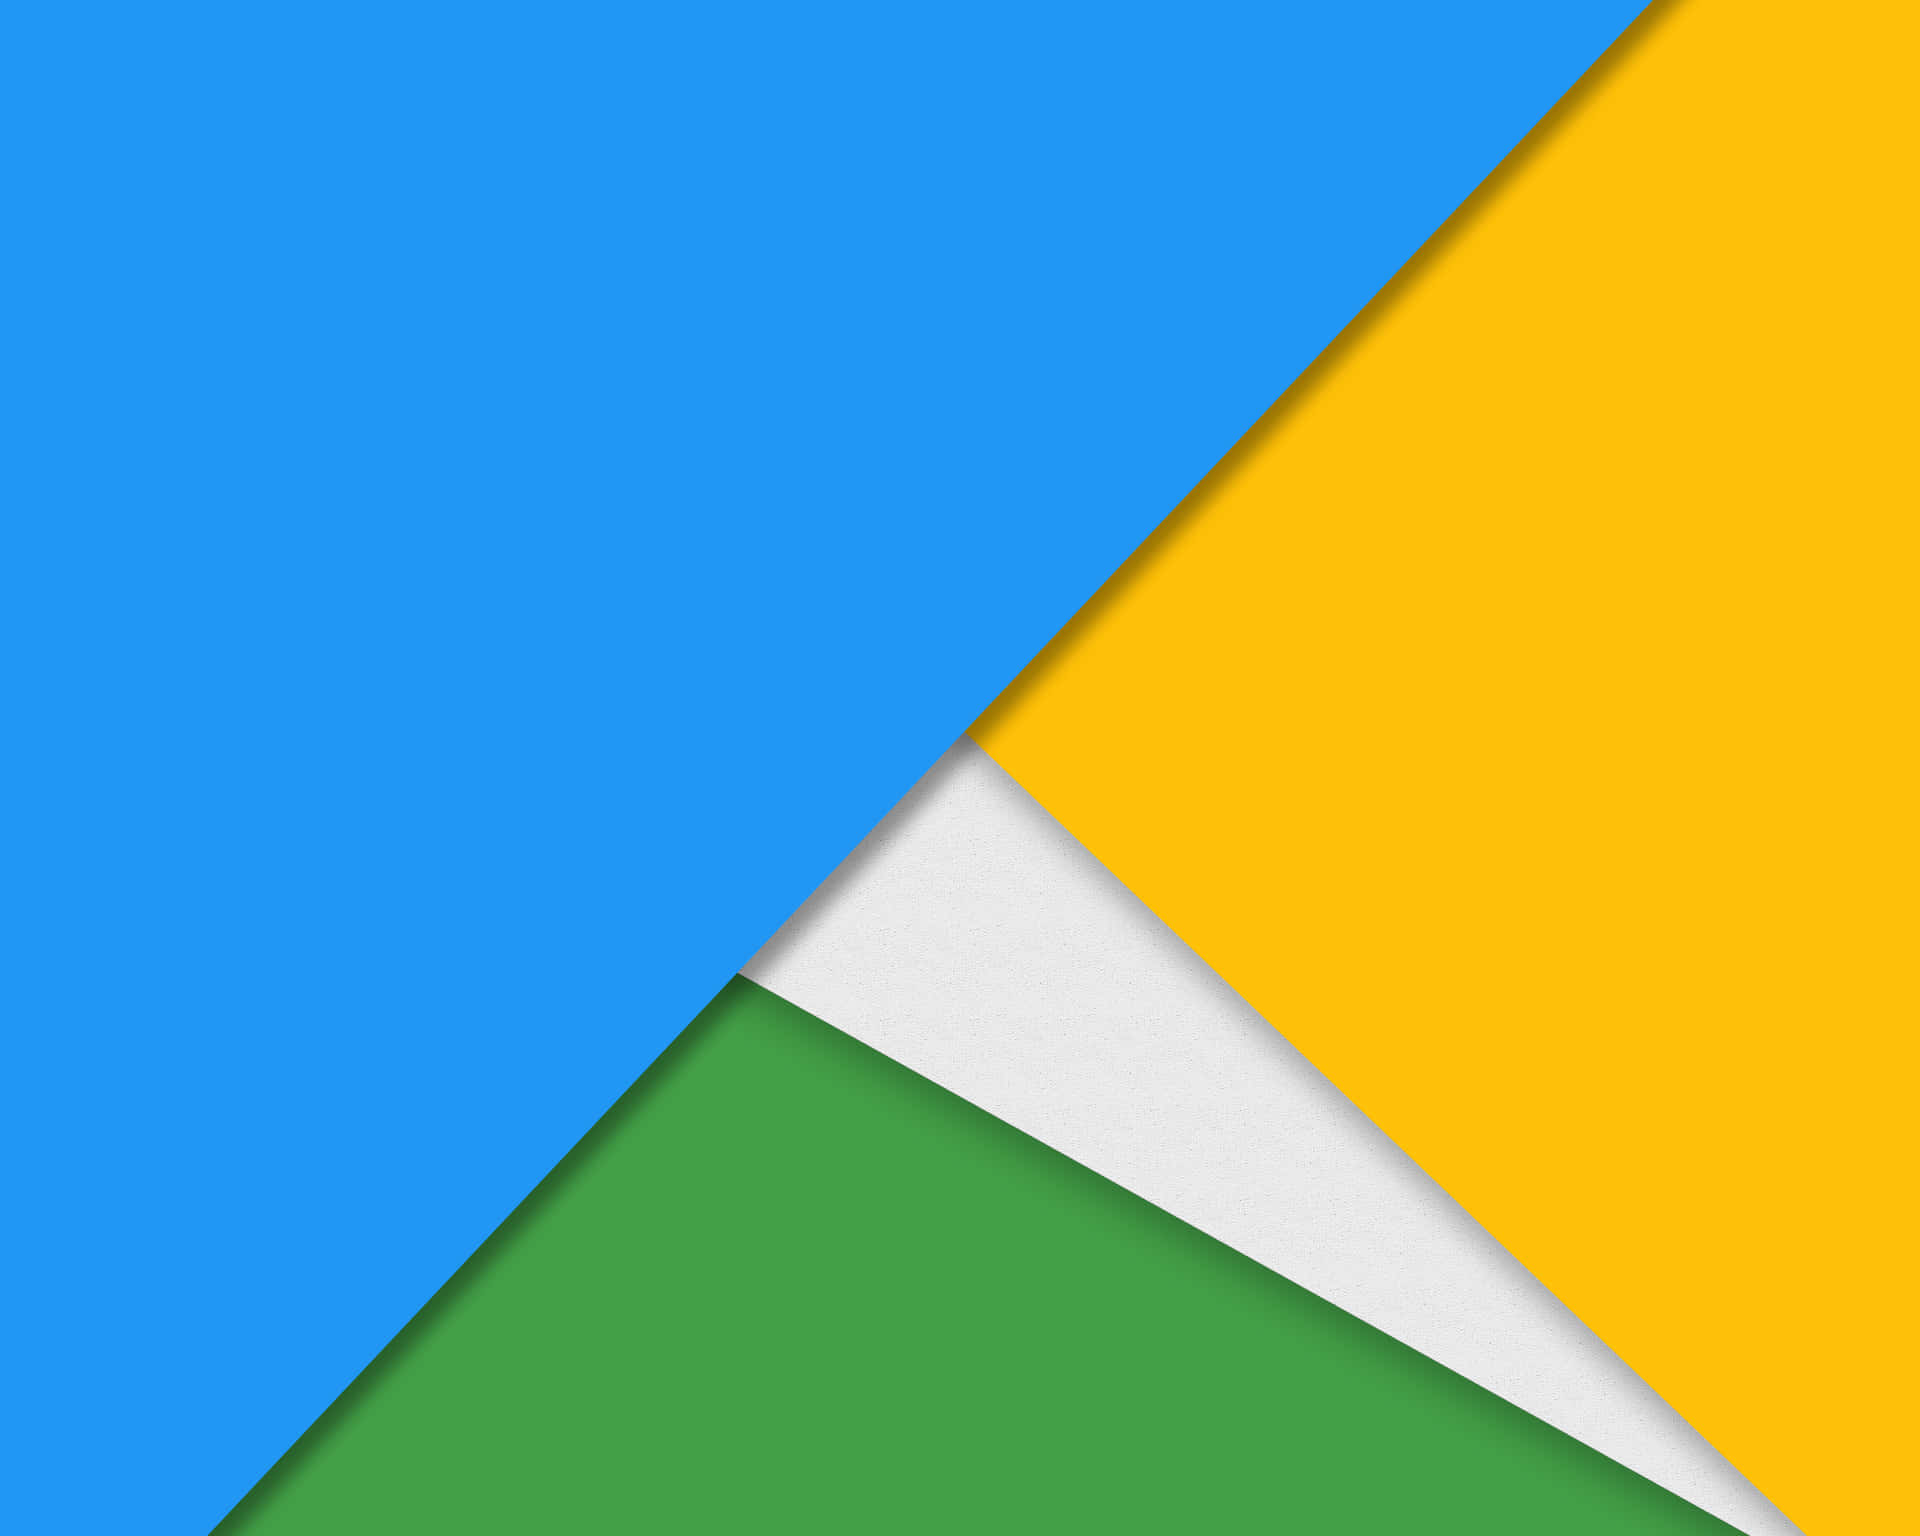 Googlechrome-logo Mit Blauer, Gelber Und Grüner Farbe. Wallpaper